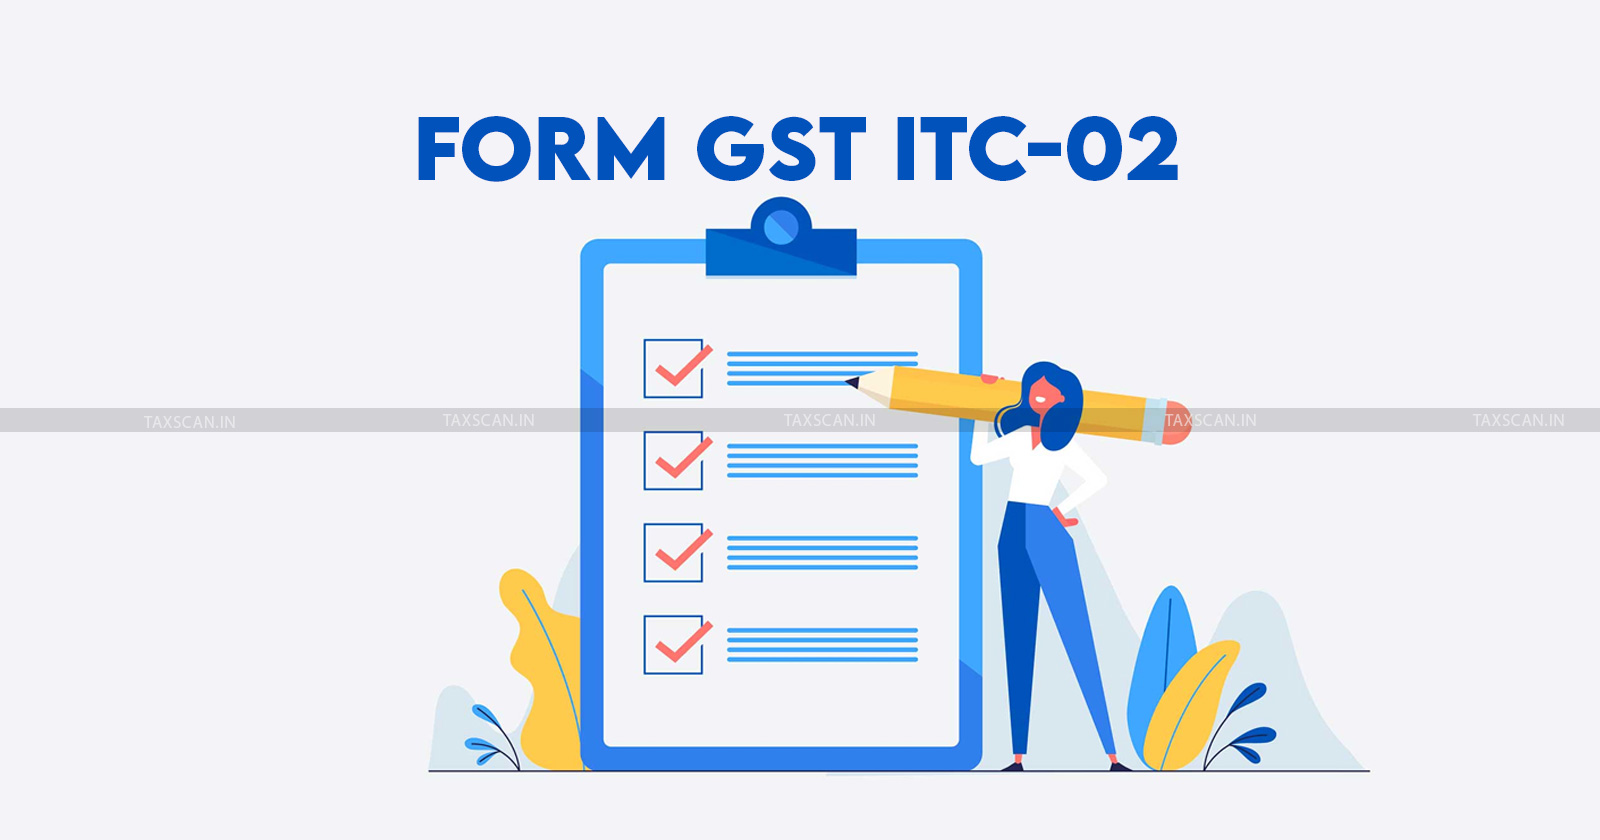 Transfer ITC - File Form ITC-02 in GST Portal - taxscan